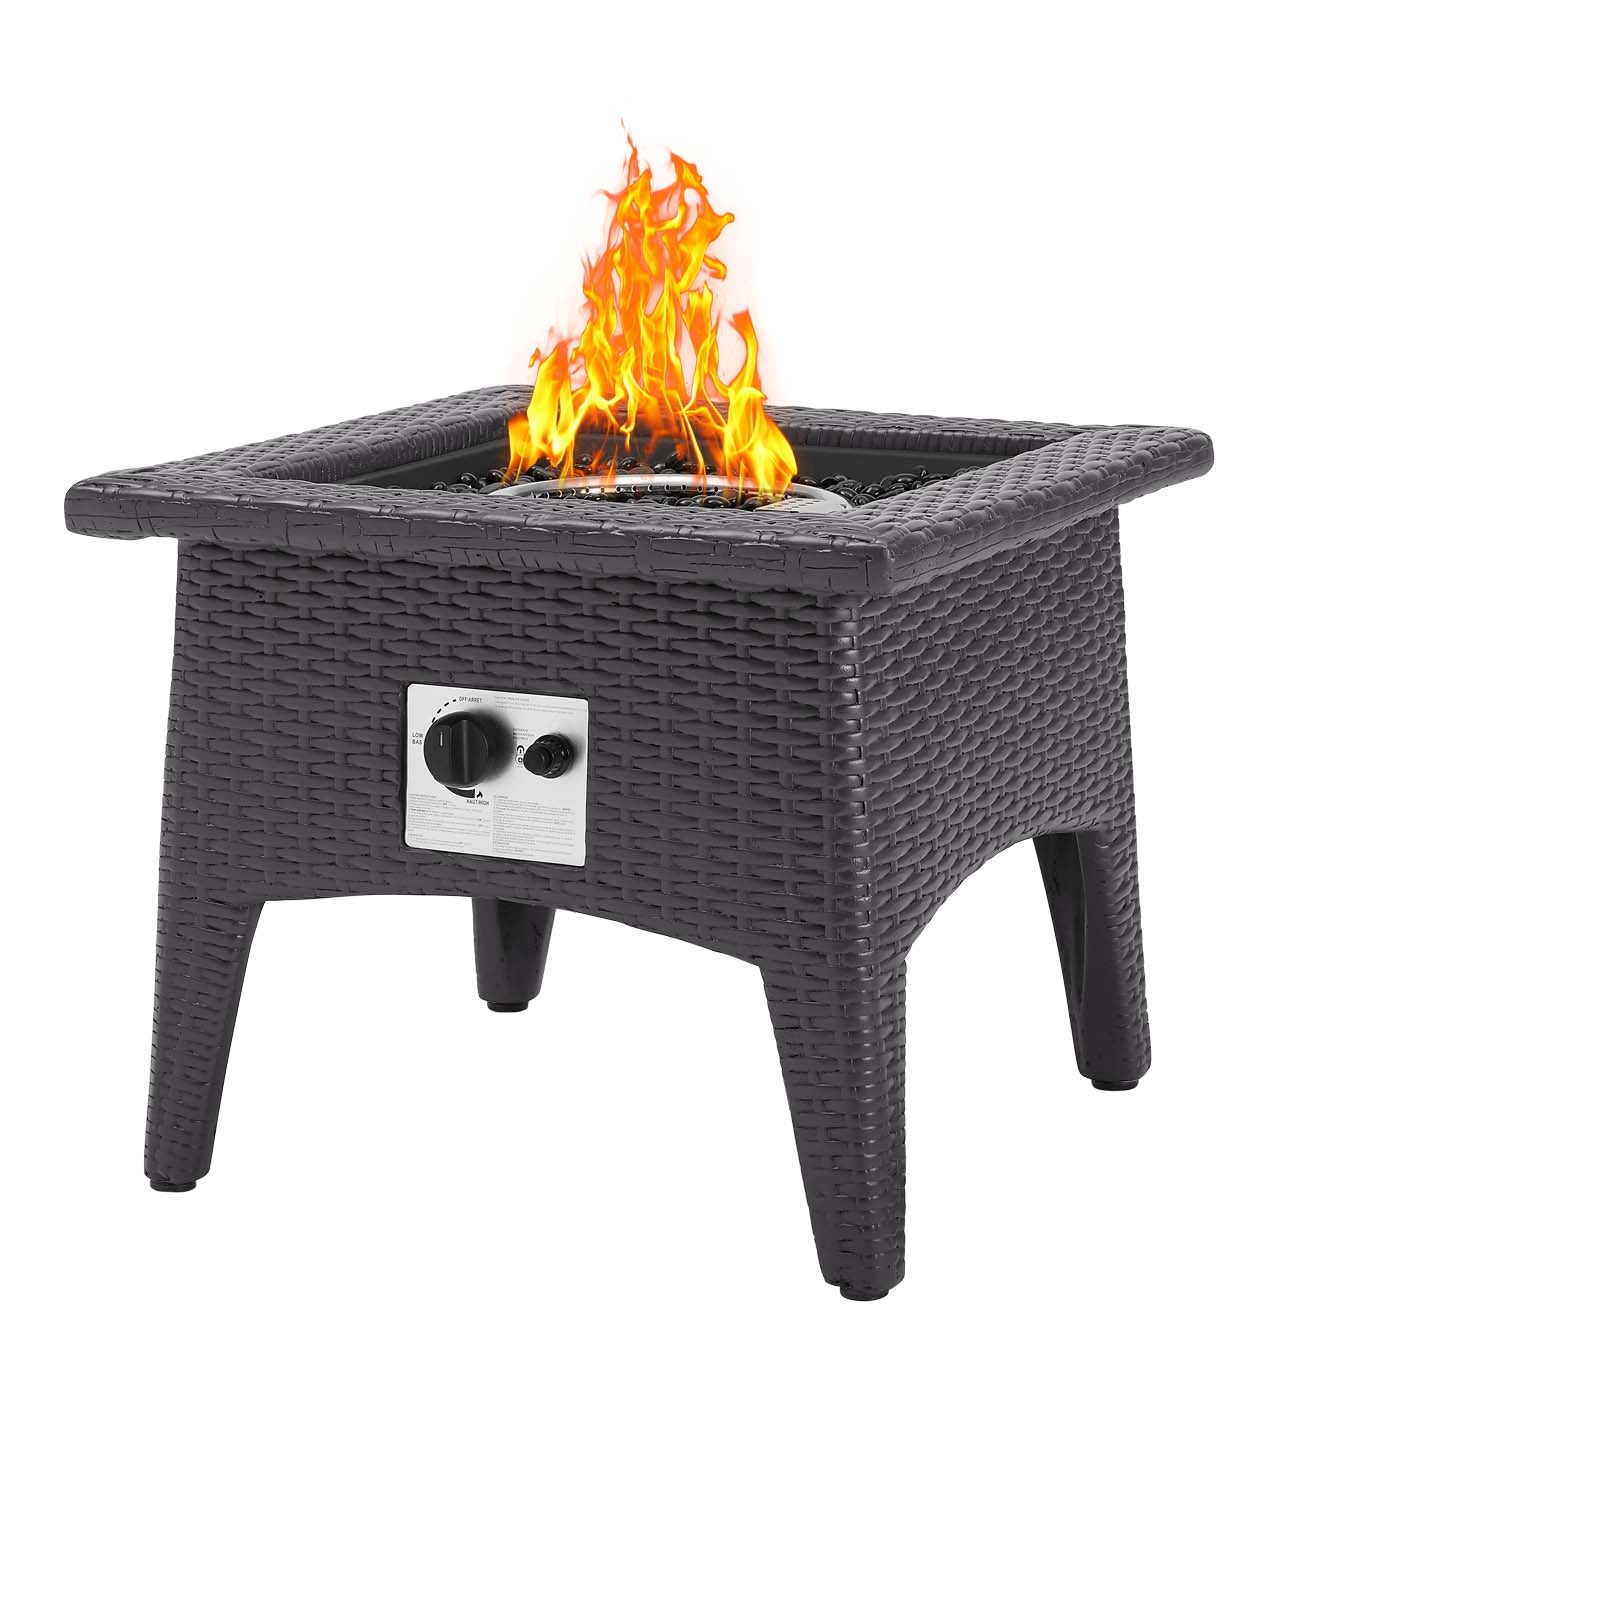 Vivacity Outdoor Patio Fire Pit Table Espresso